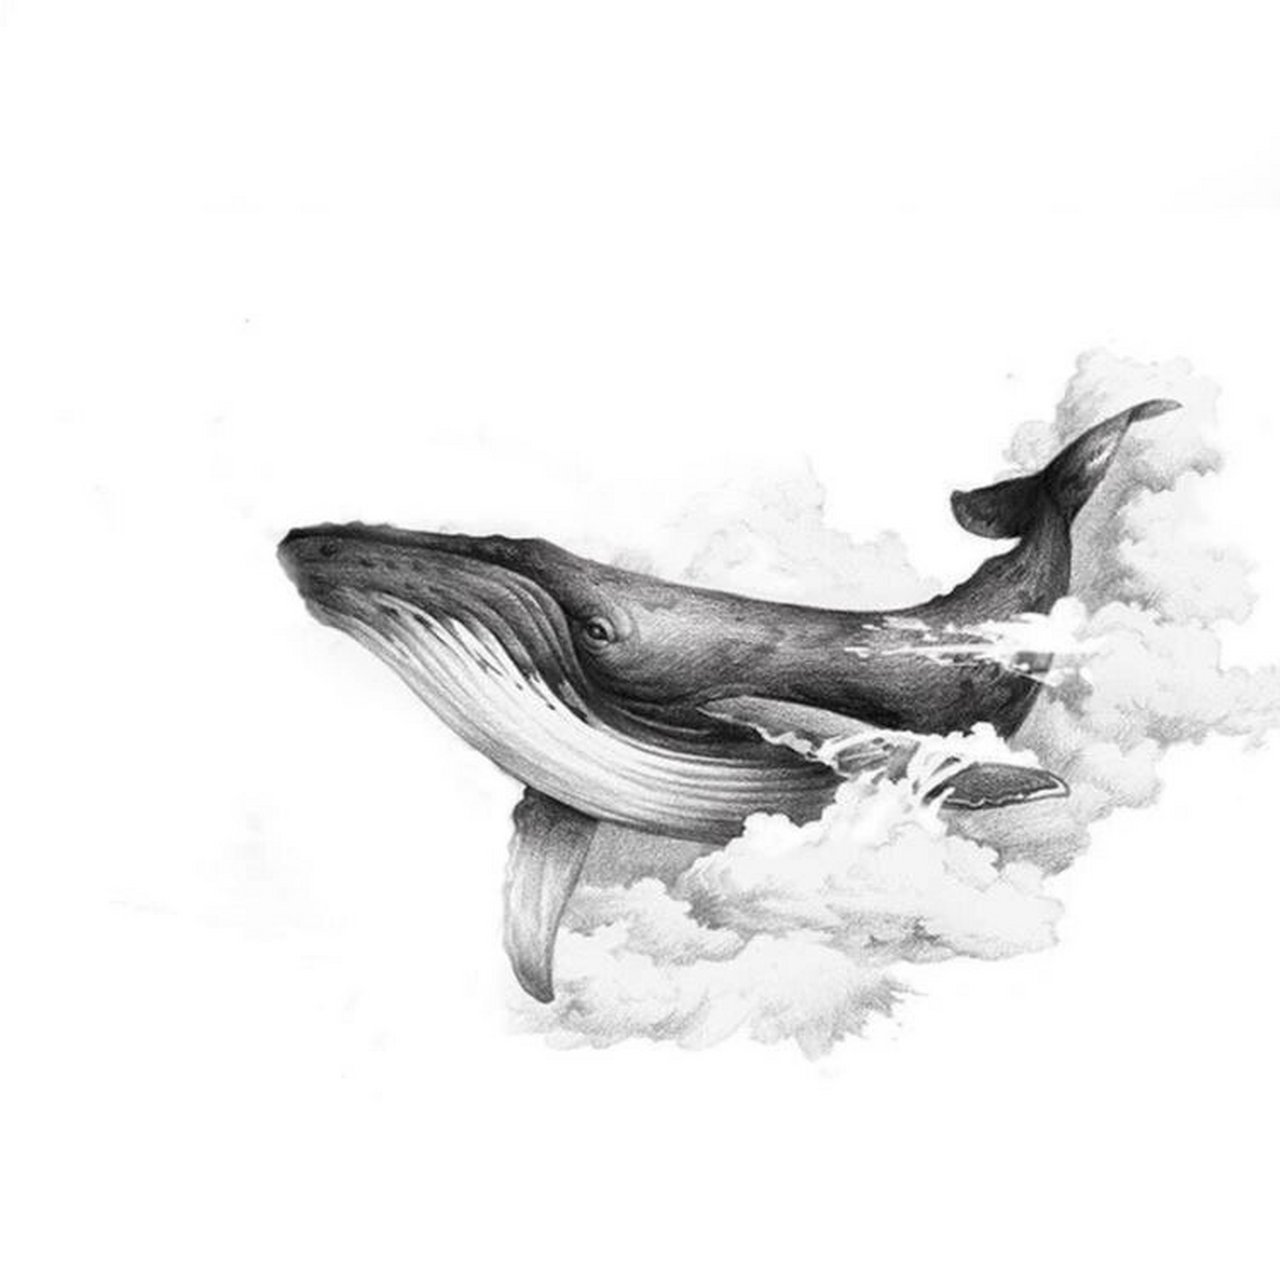 鲸鱼纹身手稿 线条图片